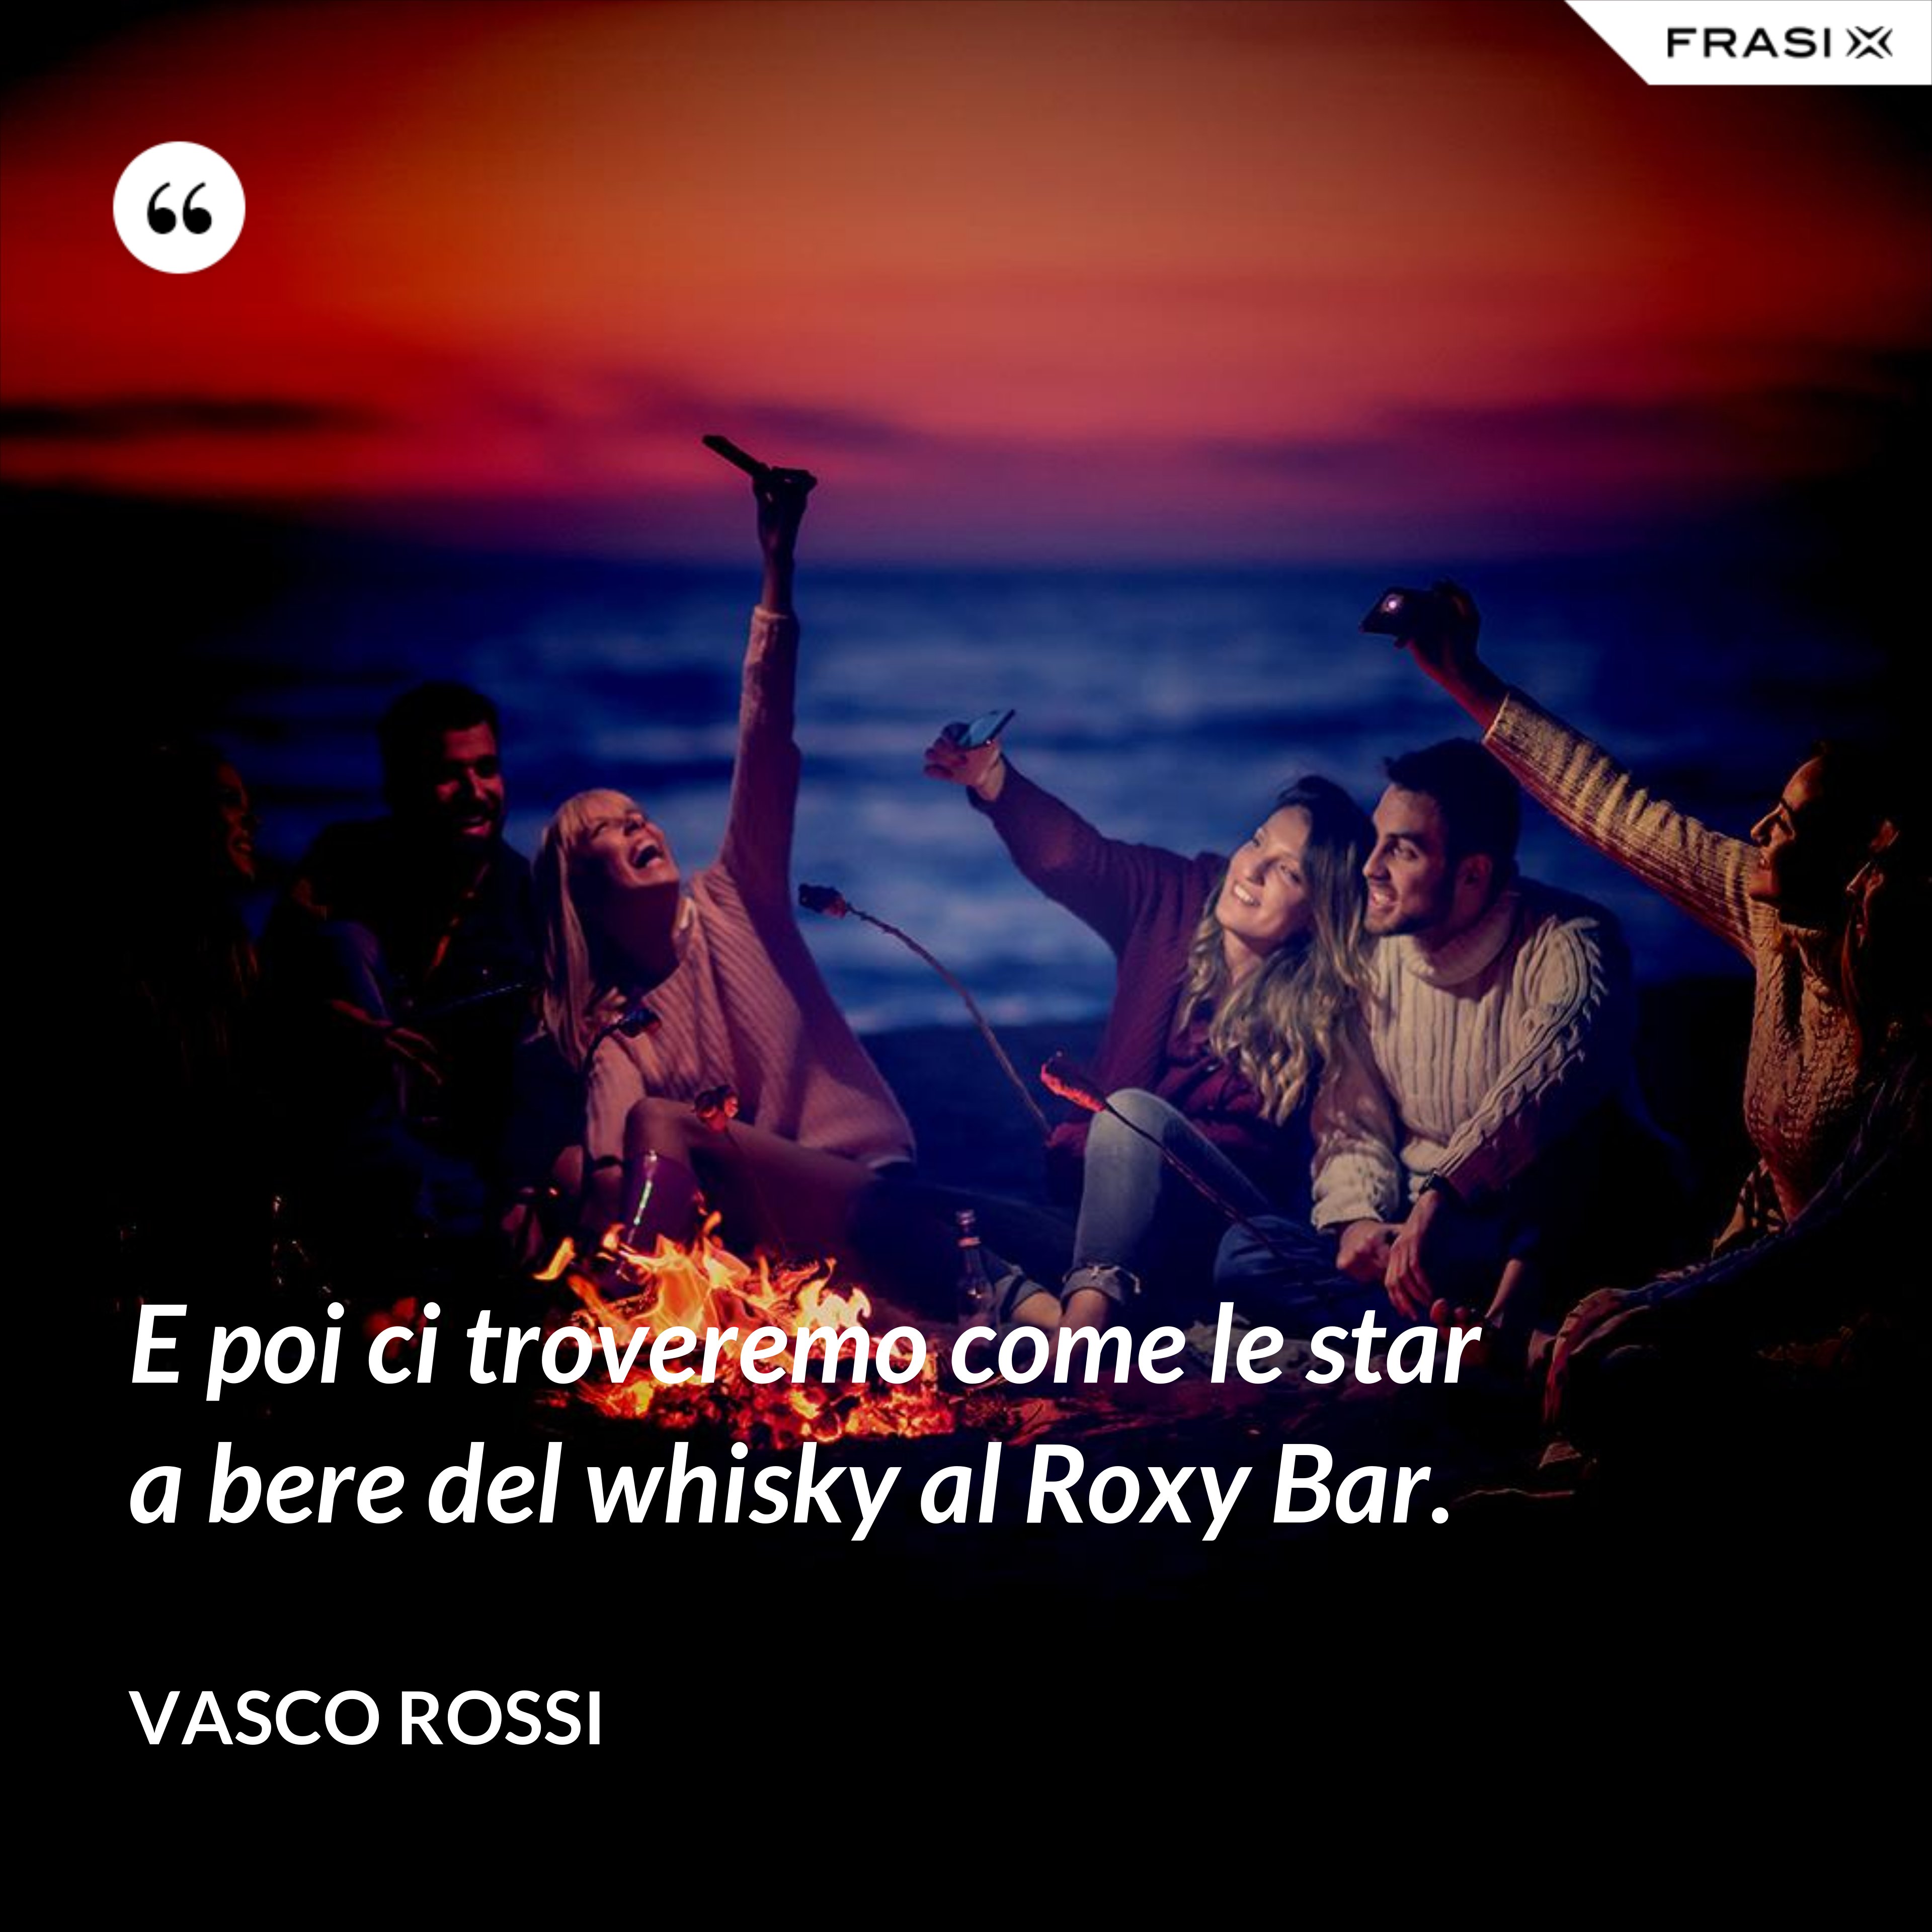 E poi ci troveremo come le star a bere del whisky al Roxy Bar. - Vasco Rossi